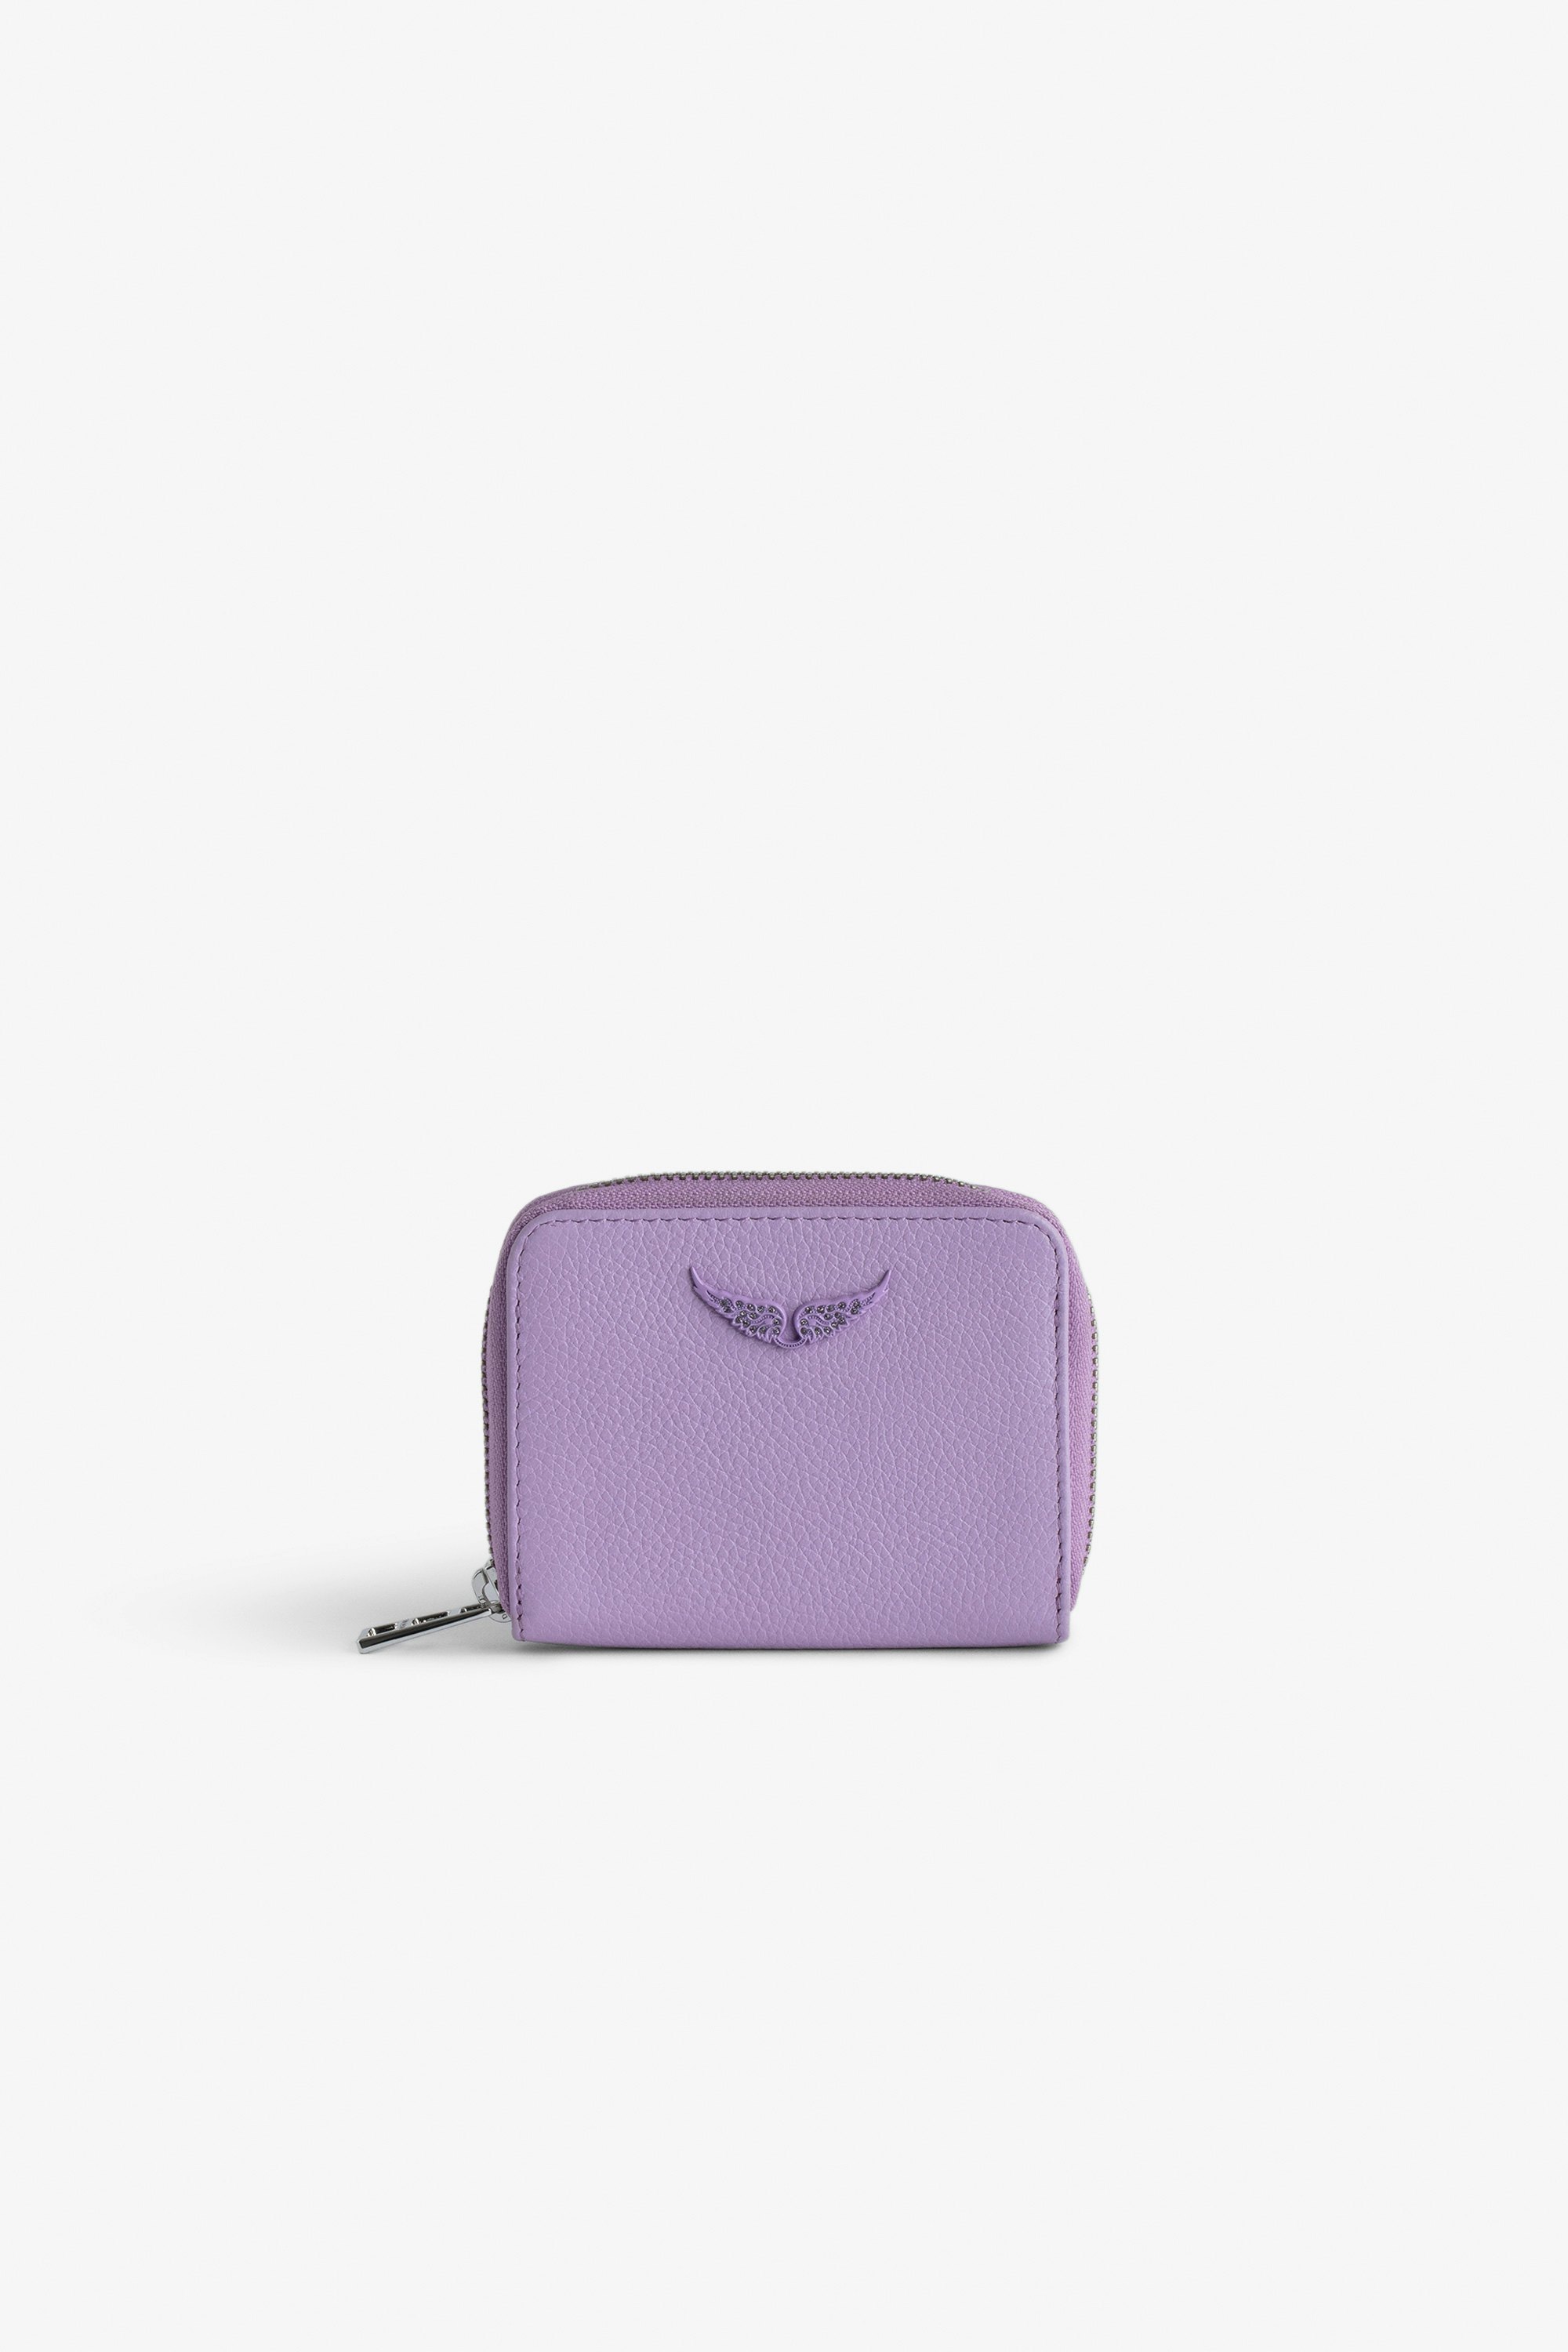 Porte-Monnaie Mini ZV - Porte-monnaie en cuir grainé violet orné d'un charm ailes à strass.